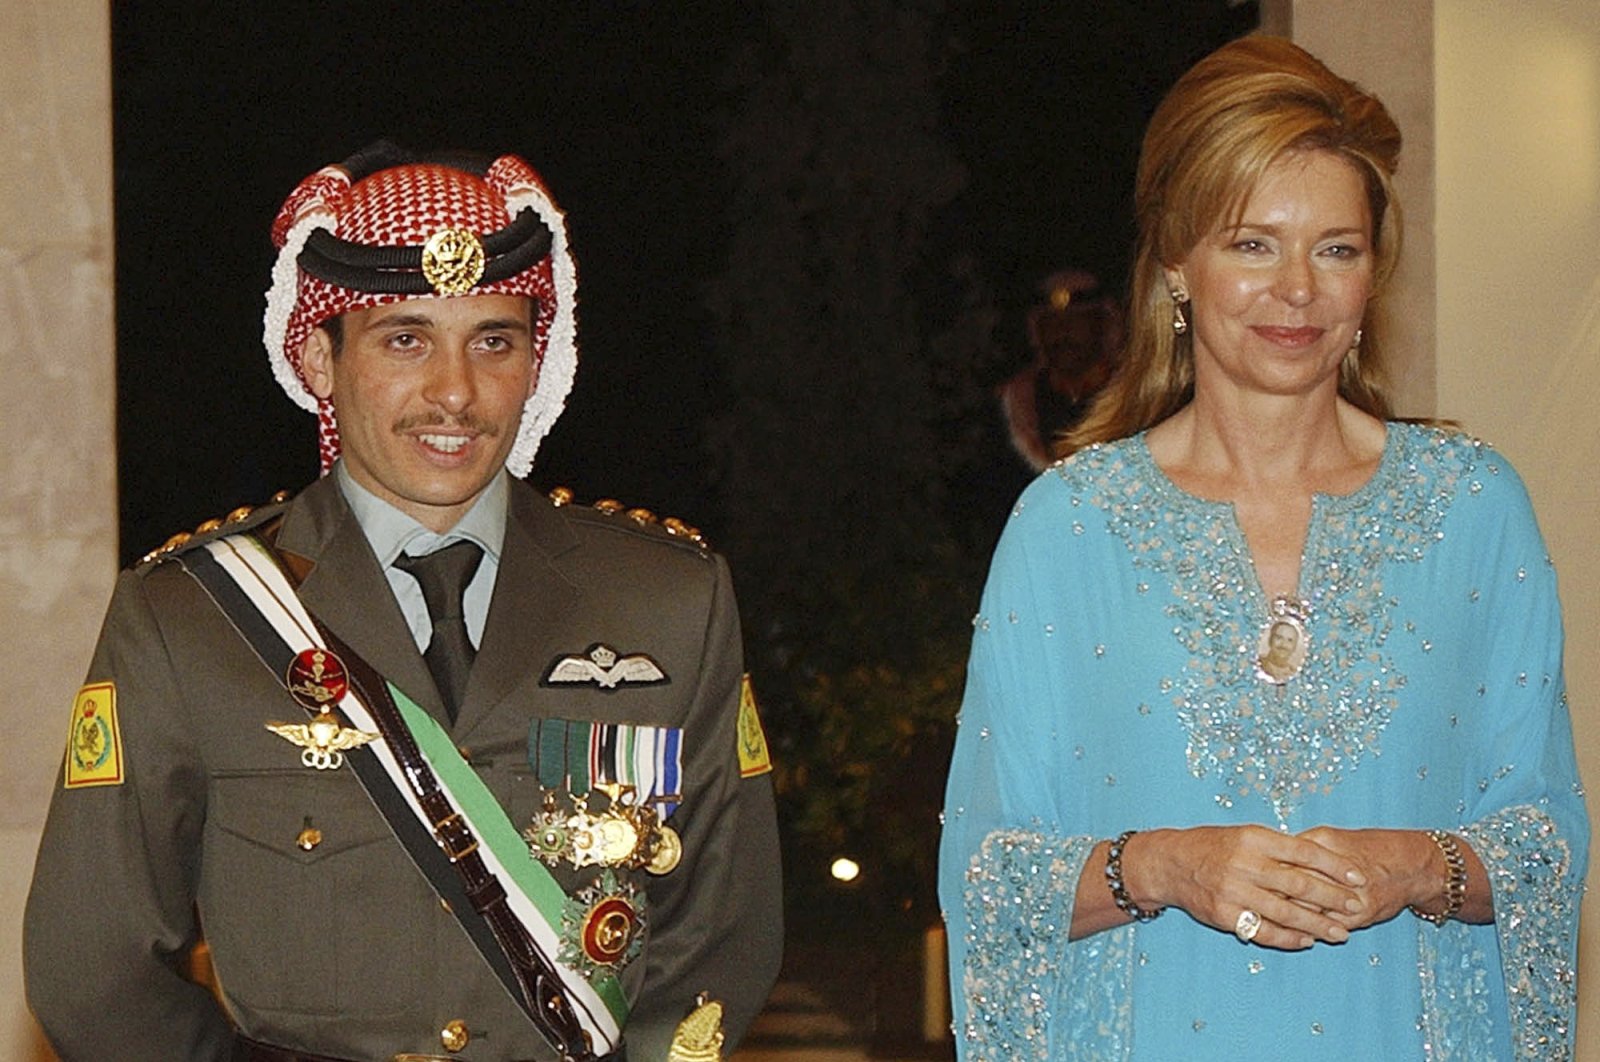 Then-Crown Prince Hamzah of Jordan (L) with his mother Queen Noor, during his wedding ceremony in Amman, Jordan, May 27, 2004. (AP Photo)